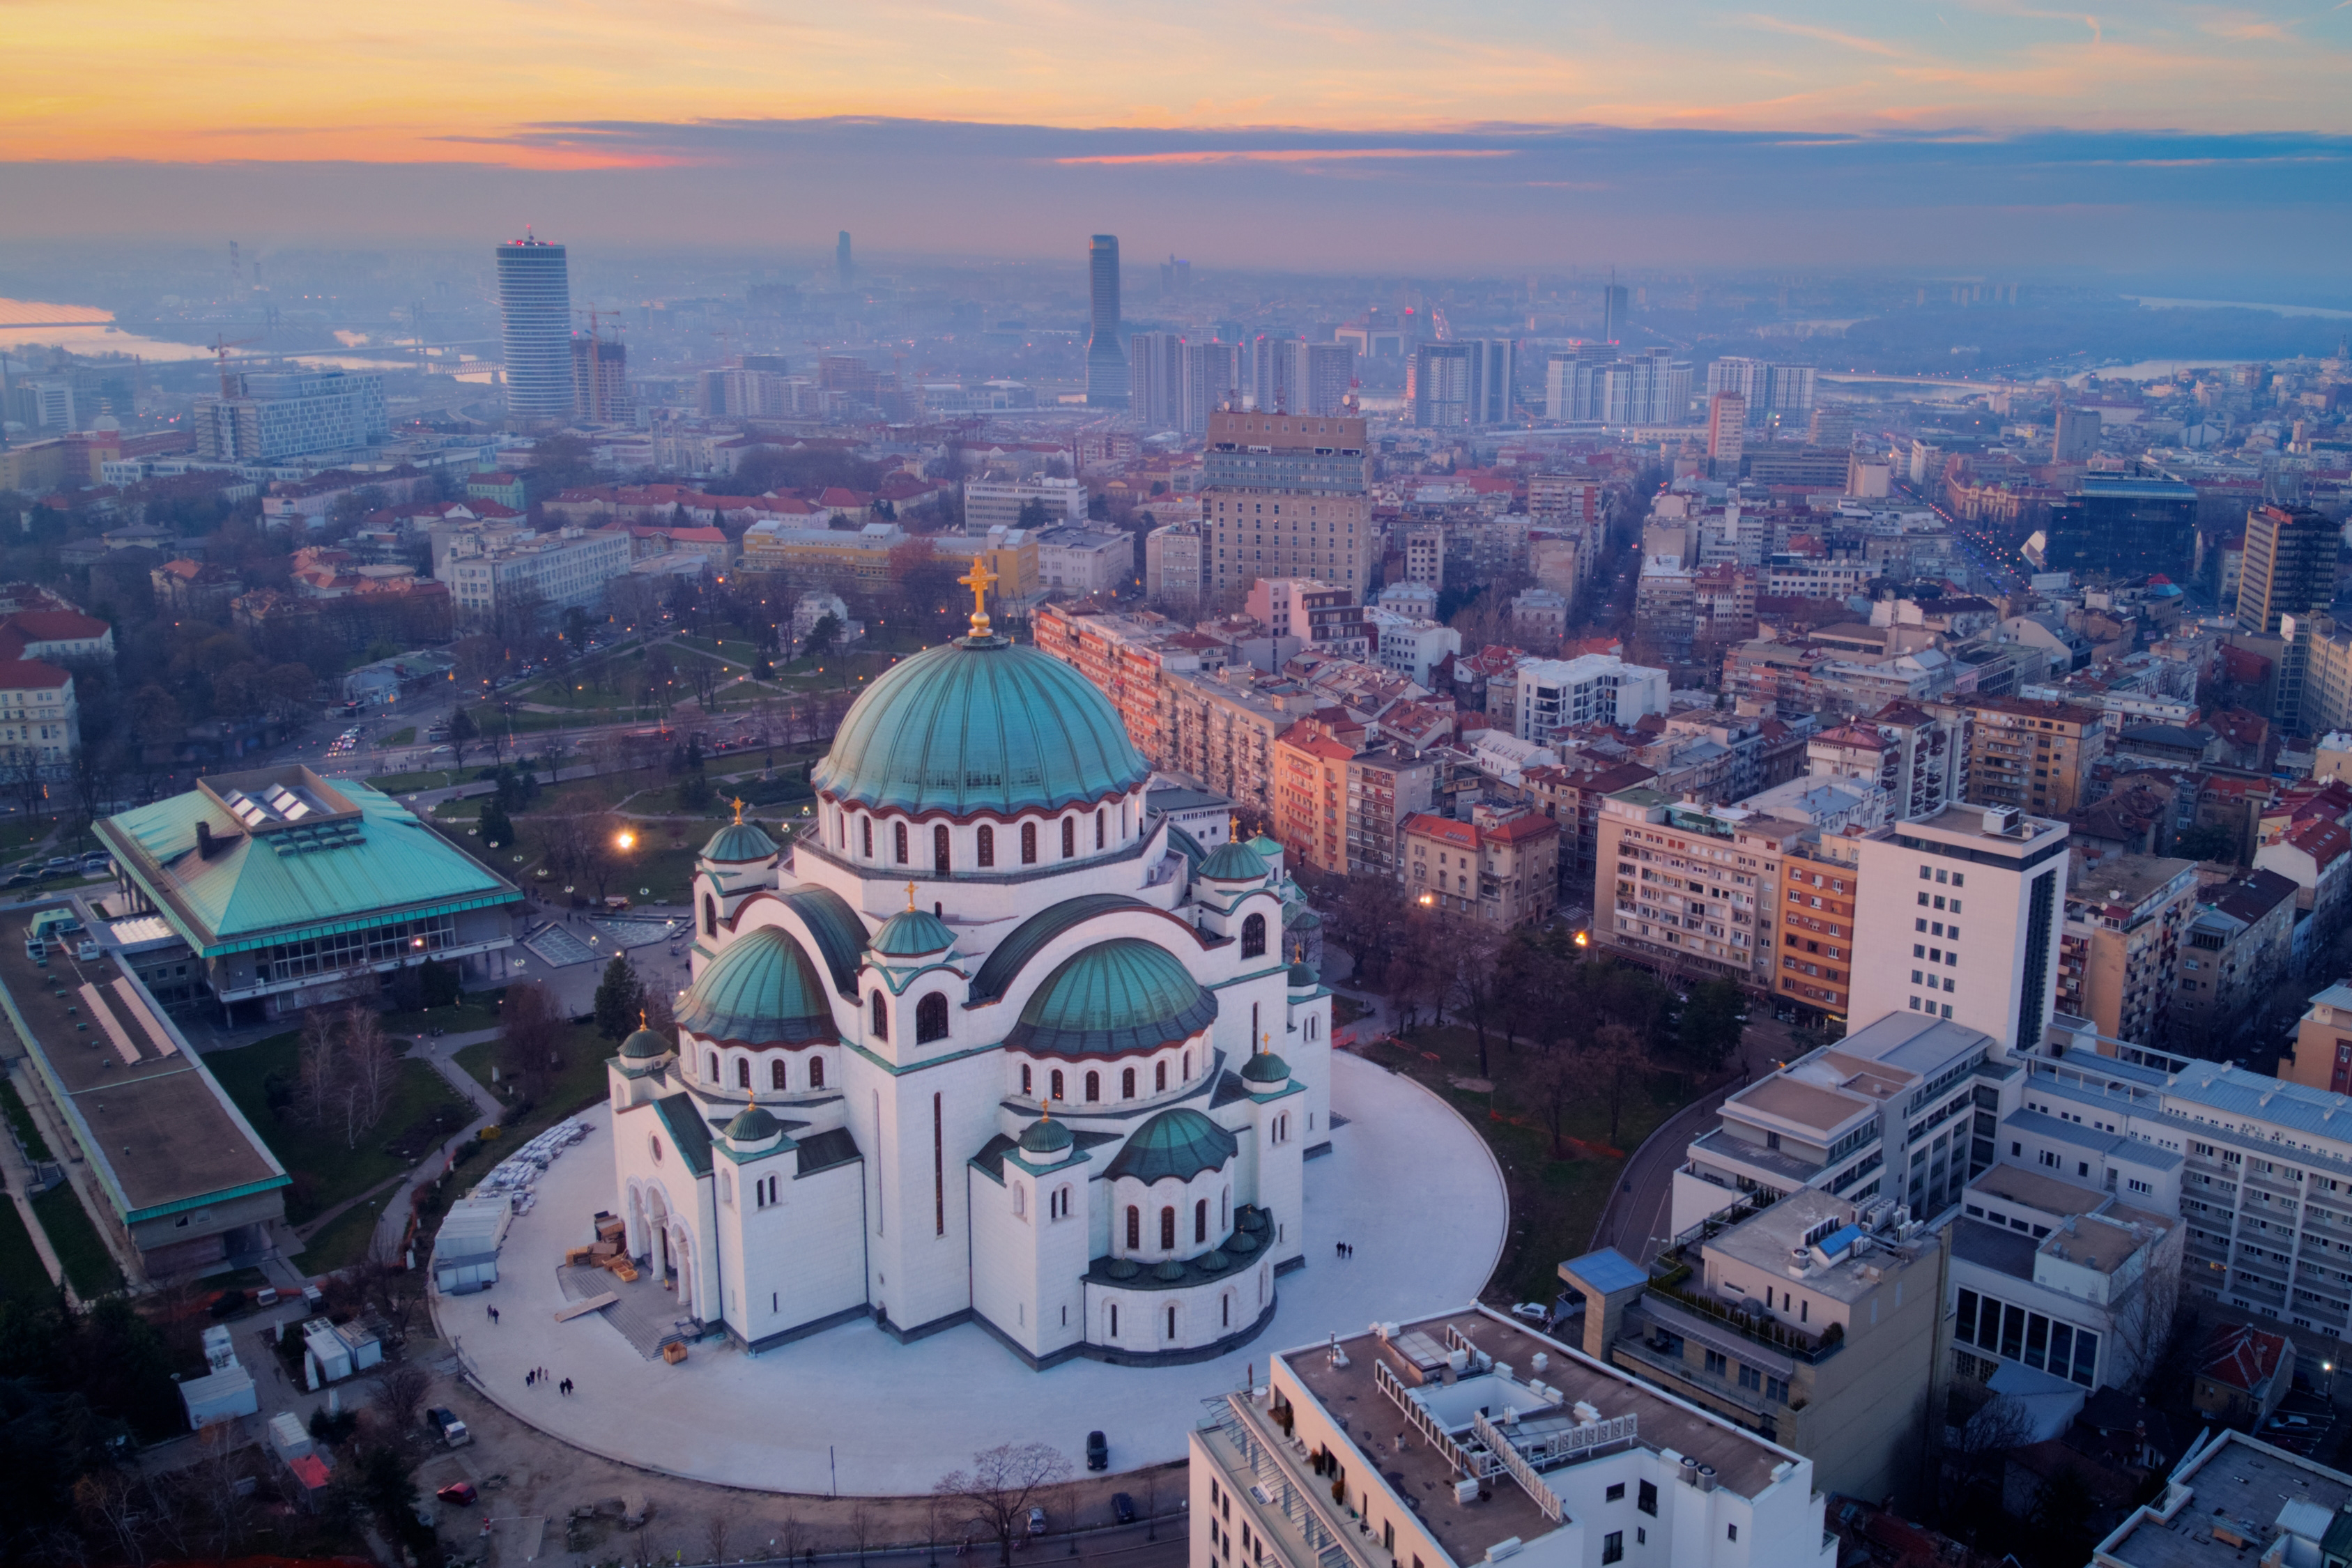  Как получить ВНЖ Сербии через открытие бизнеса или покупку недвижимости